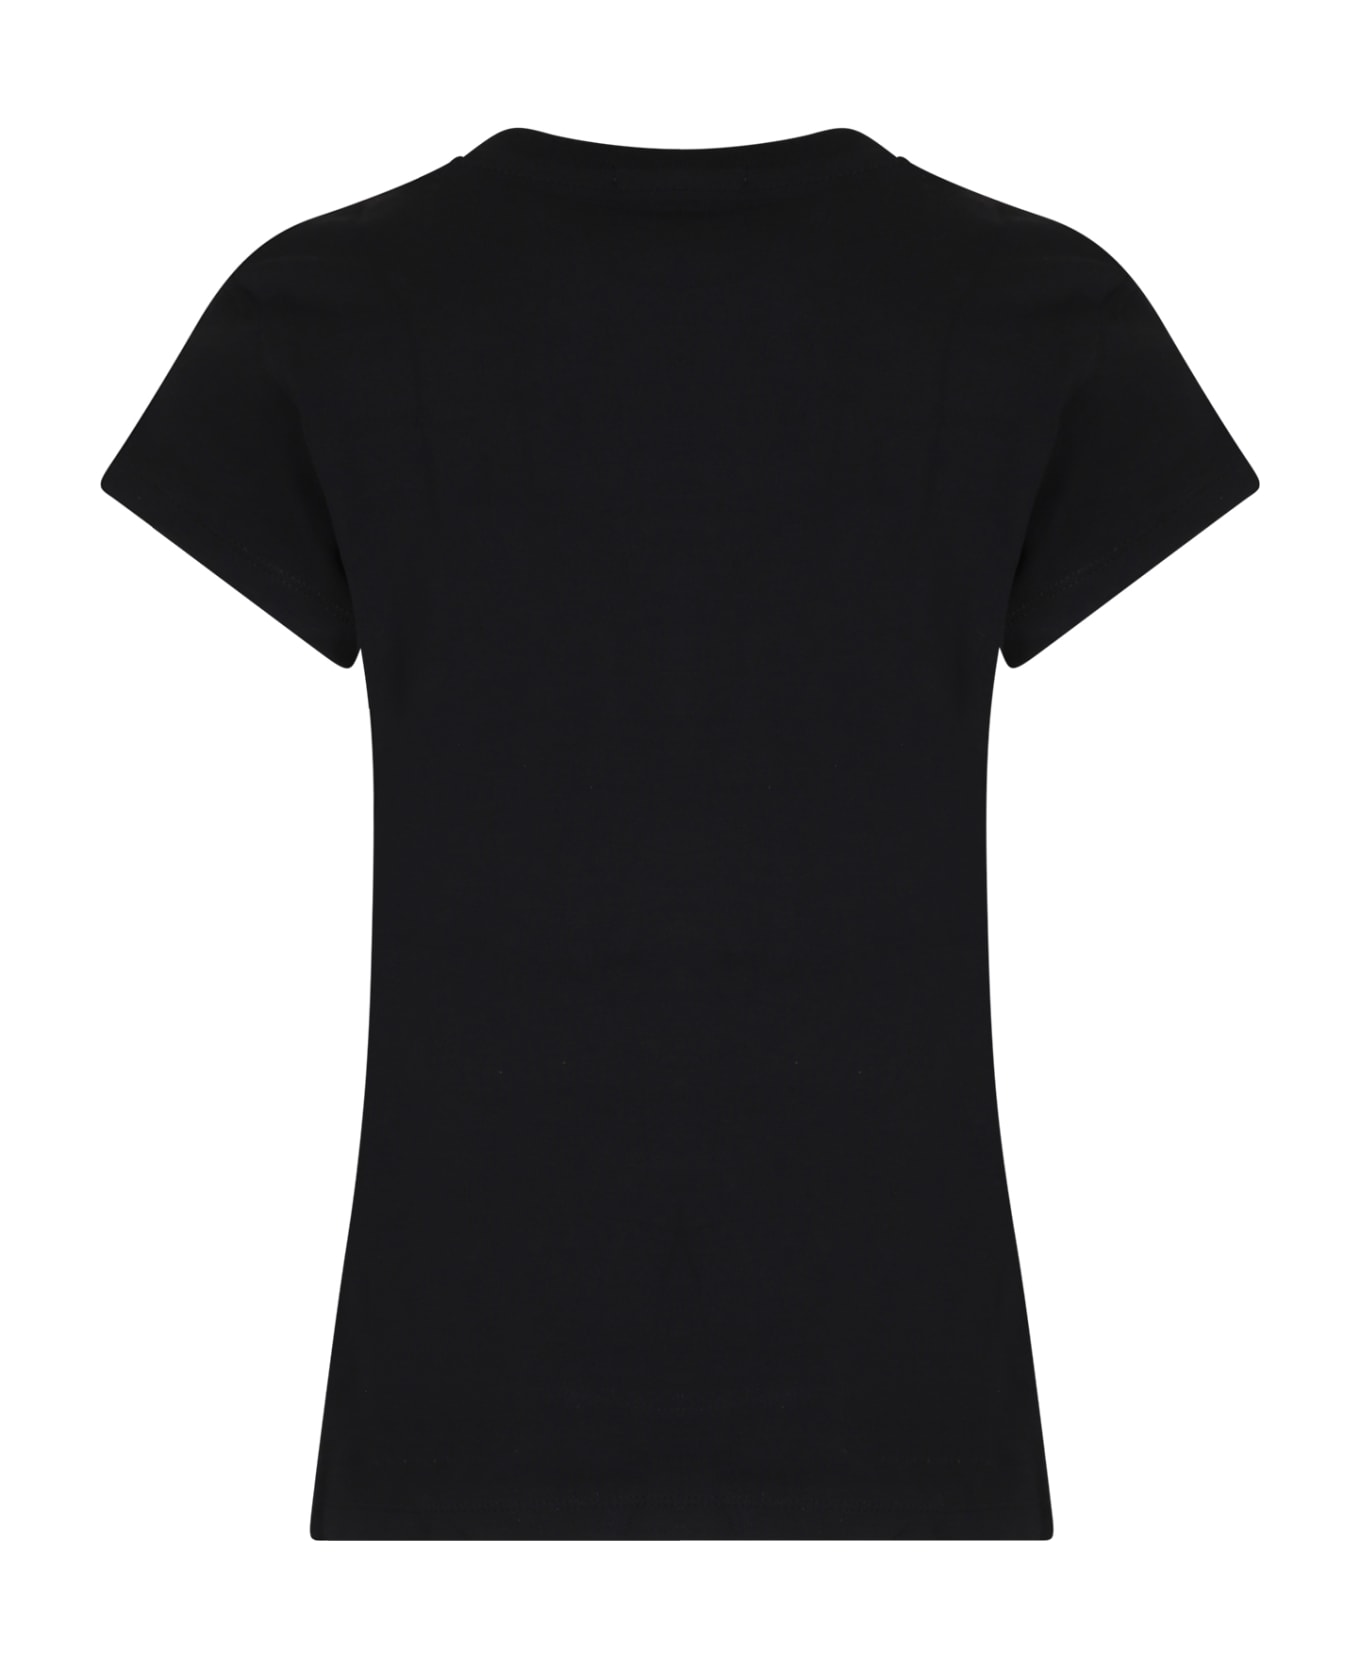 Calvin Klein Black T-shirt For Girl With Logo - Black